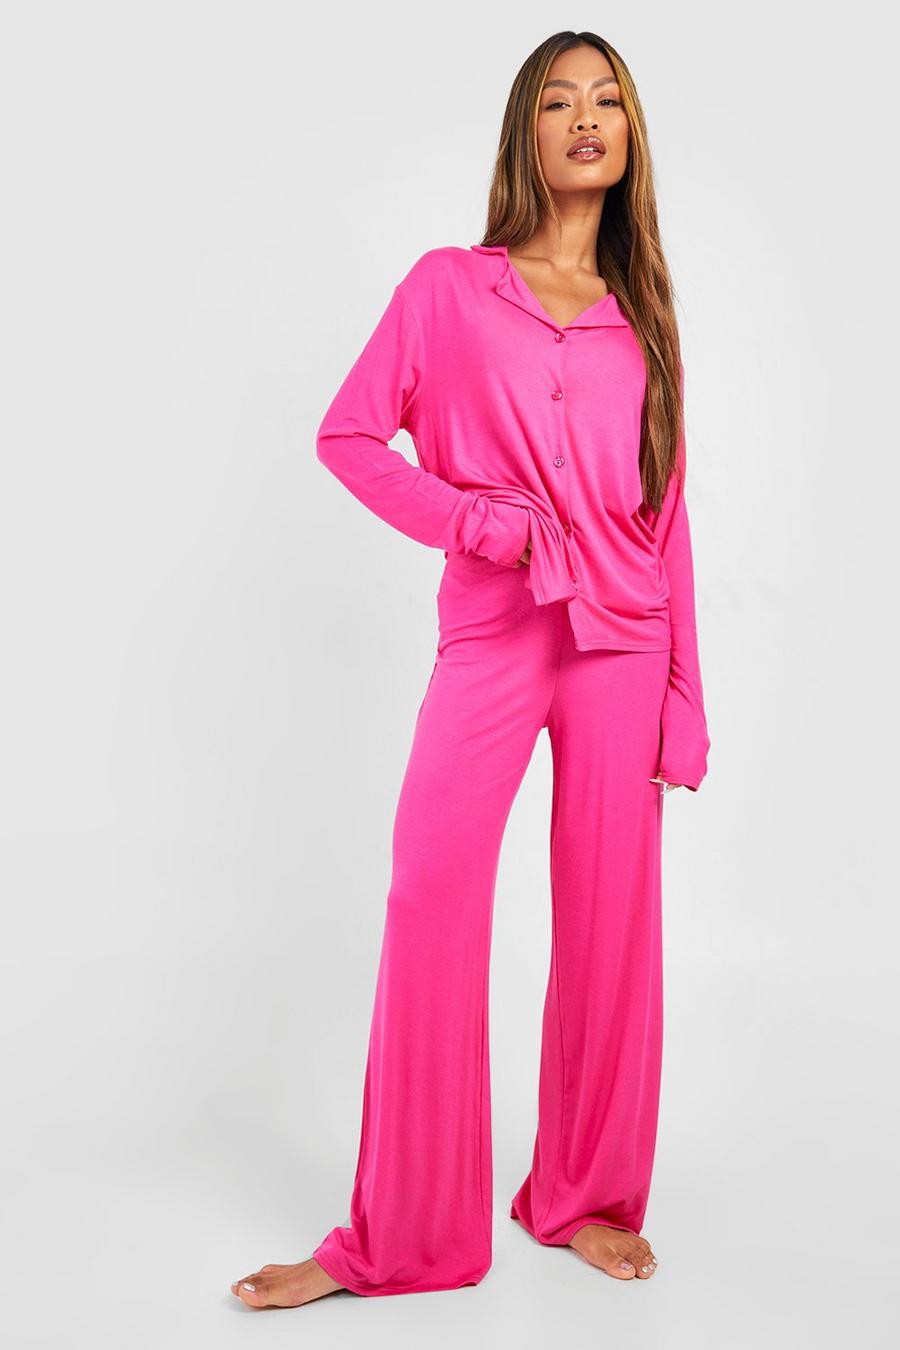 Pantaloni pigiama a gamba ampia in jersey, Hot pink rosa